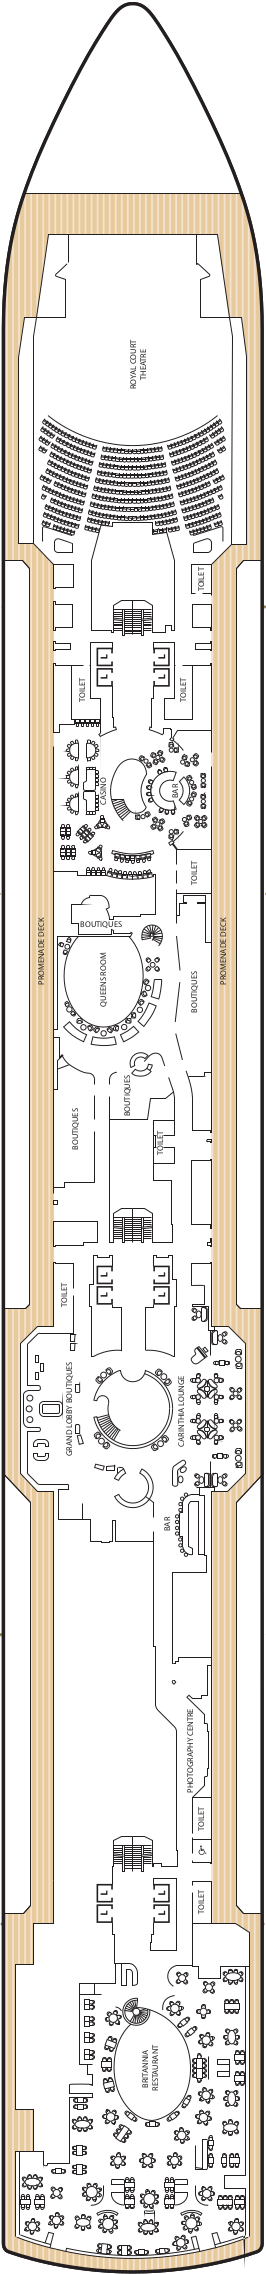 Queen Anne Deck 3 Deck Plan